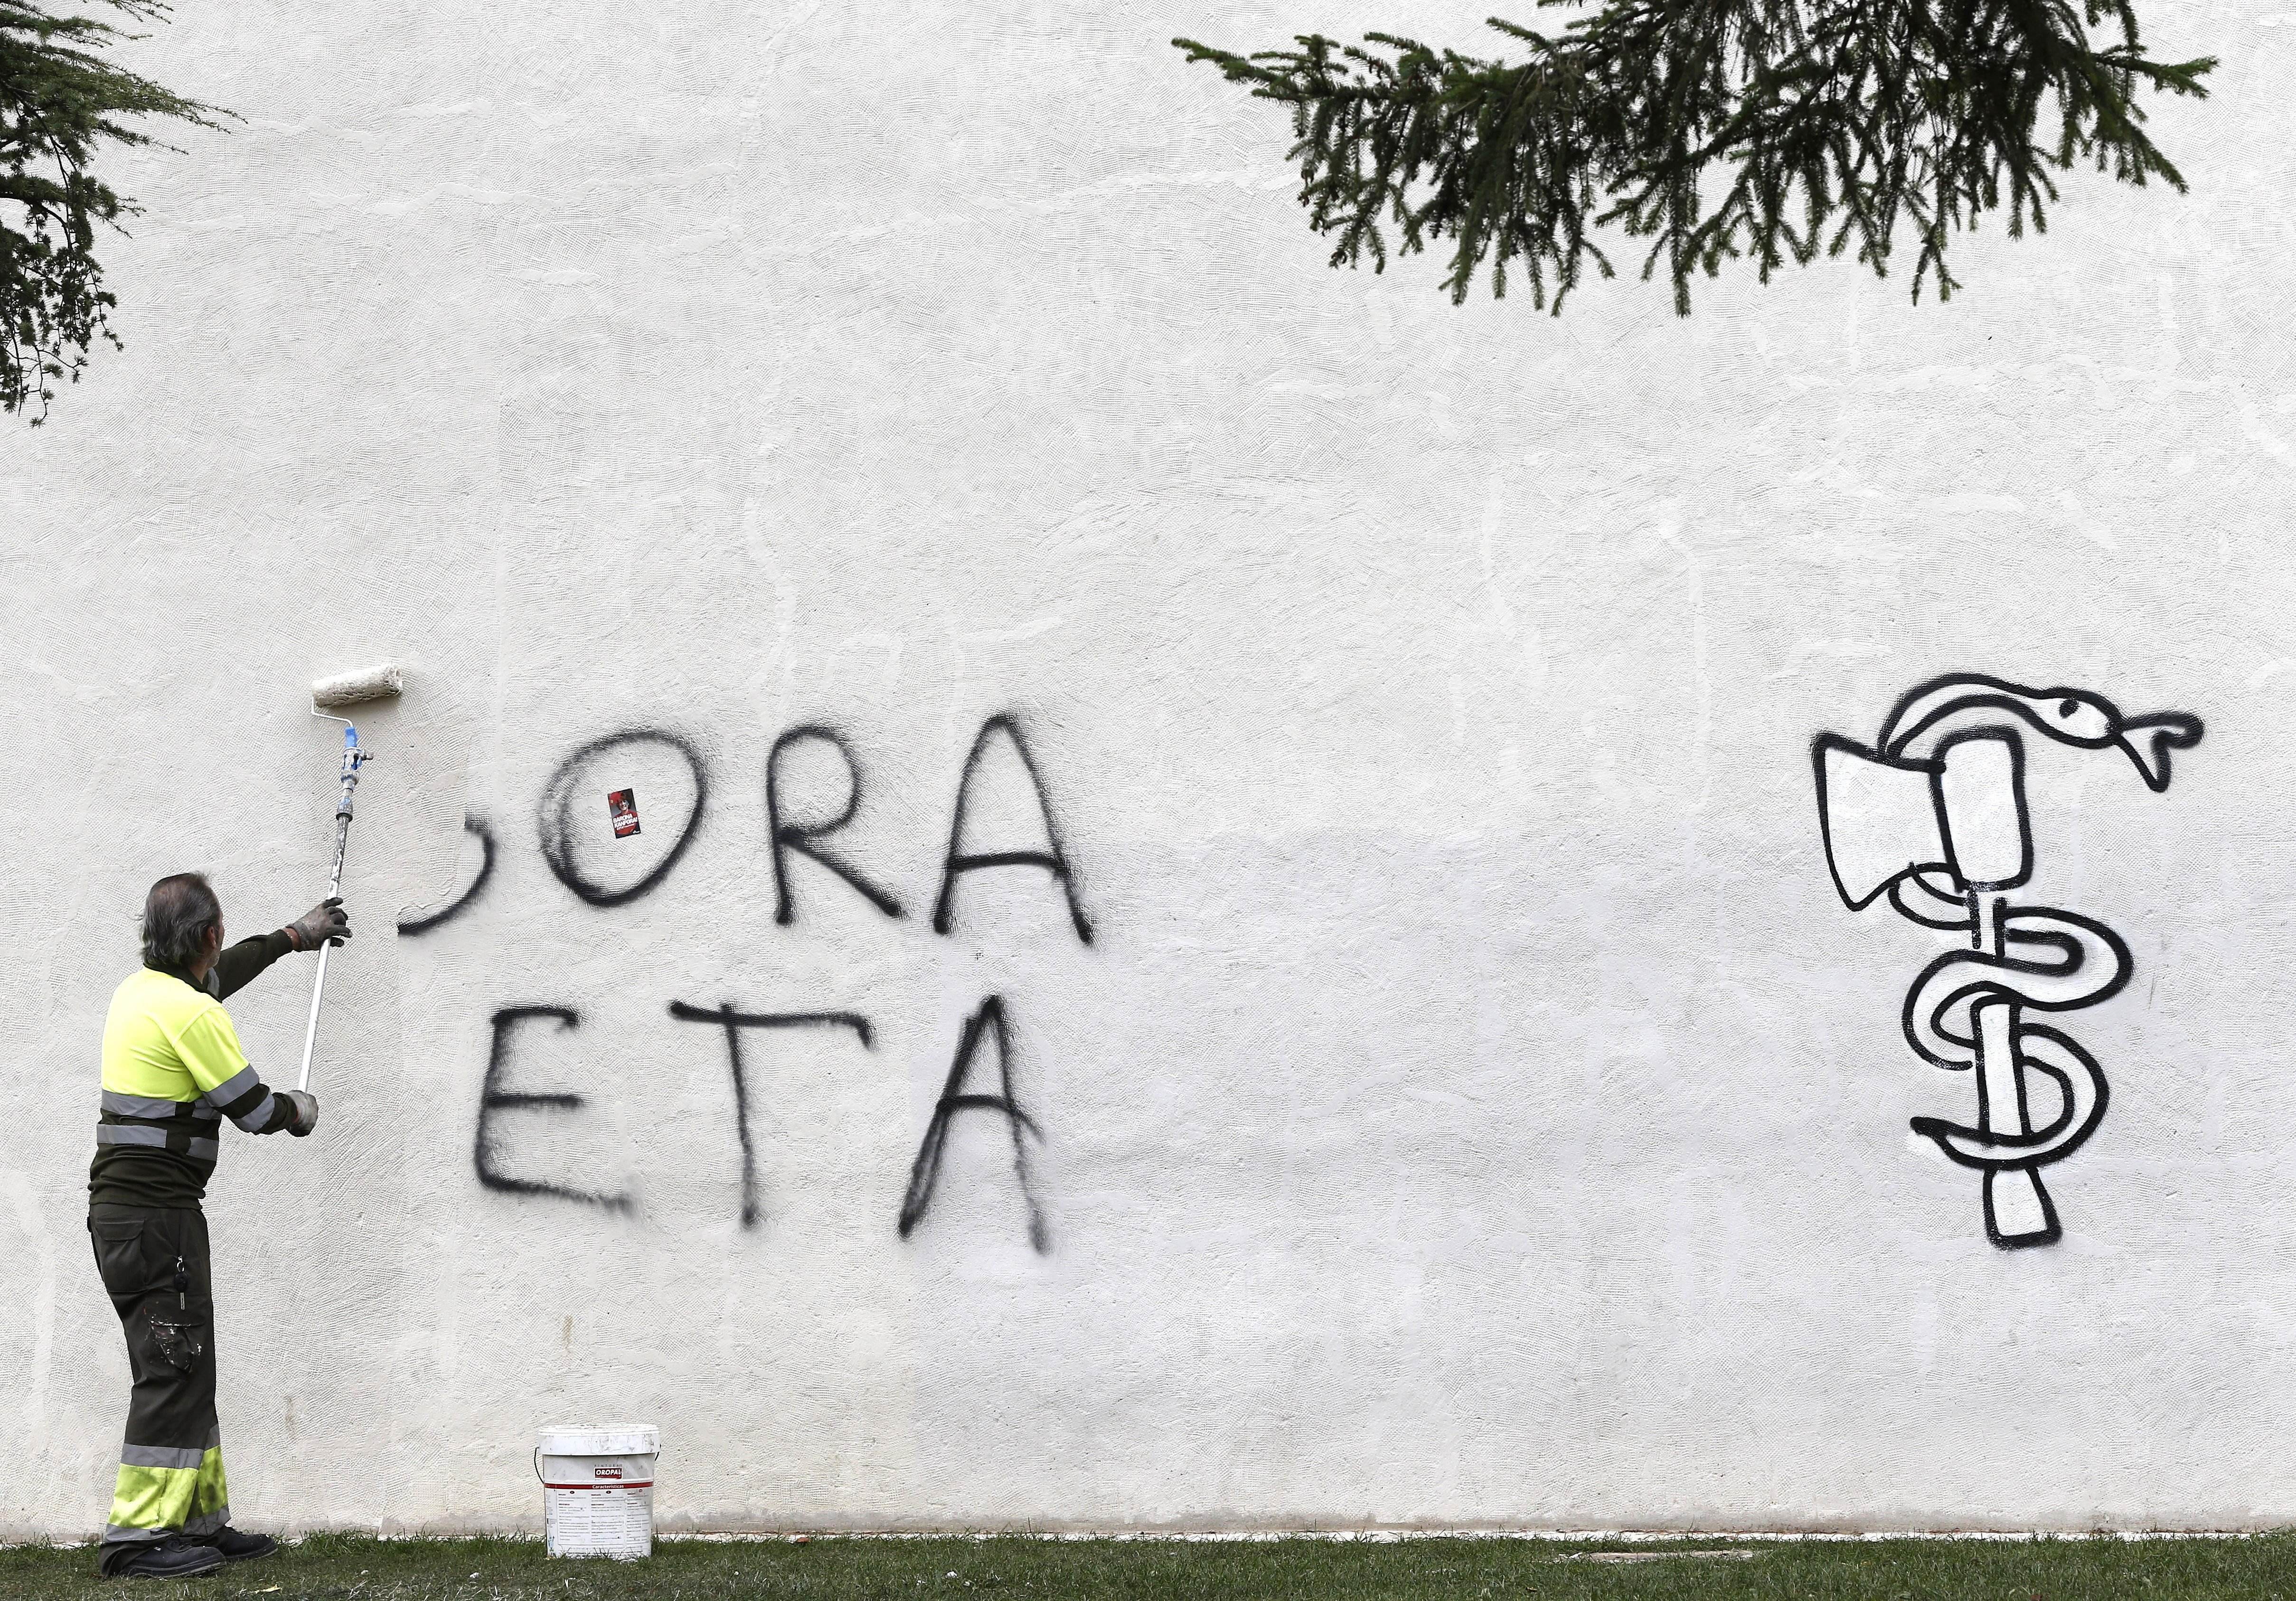 Euskadi després d'ETA: les assignatures pendents per superar el conflicte